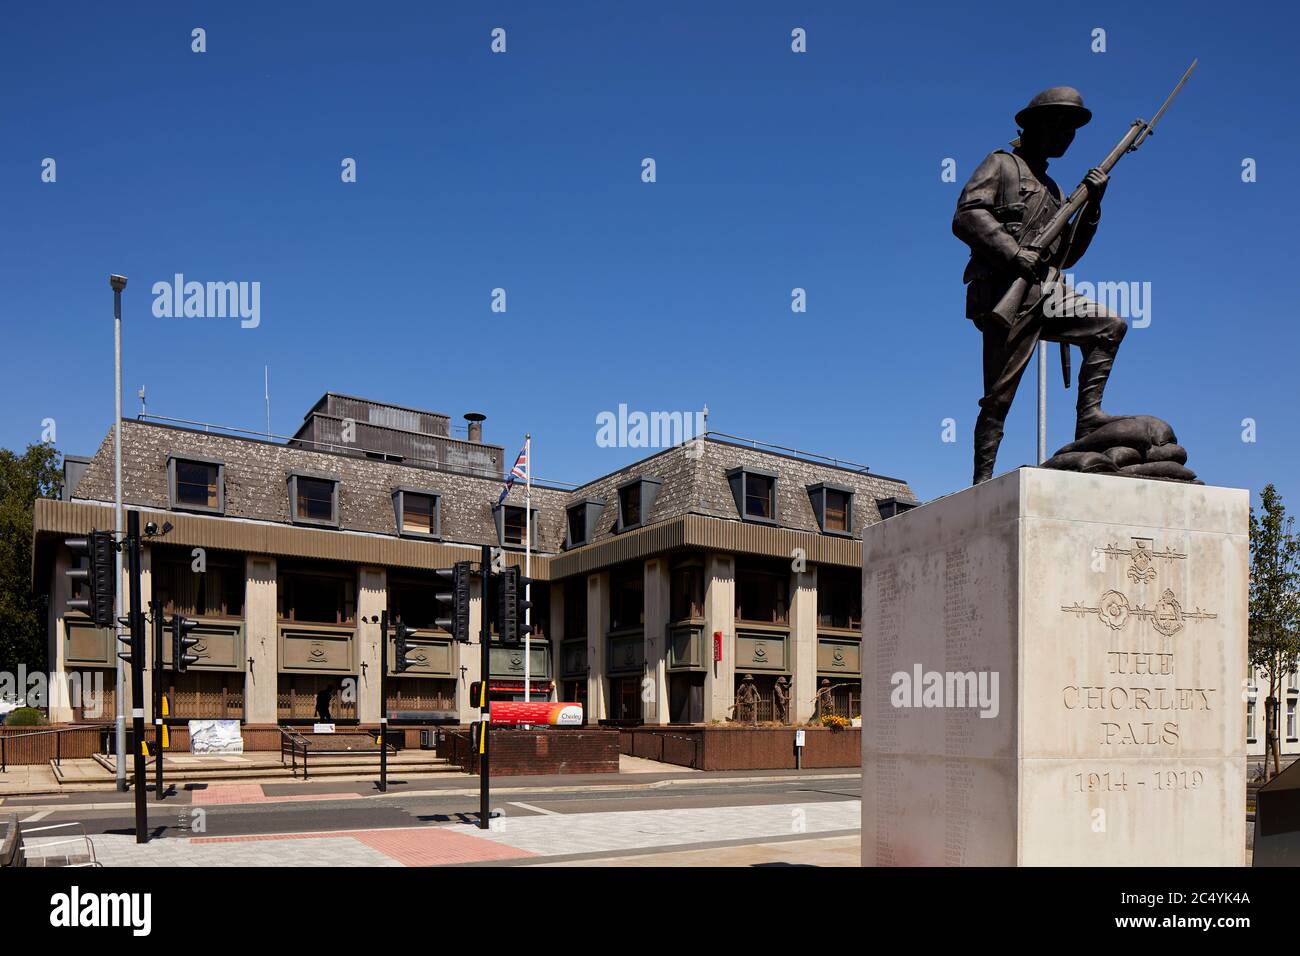 Centro di Chorley negli uffici Civici di lancashire, gli uffici del Consiglio di Chorley di Union Street e il soldato della prima guerra del Frosty statue Pals Memorial Foto Stock